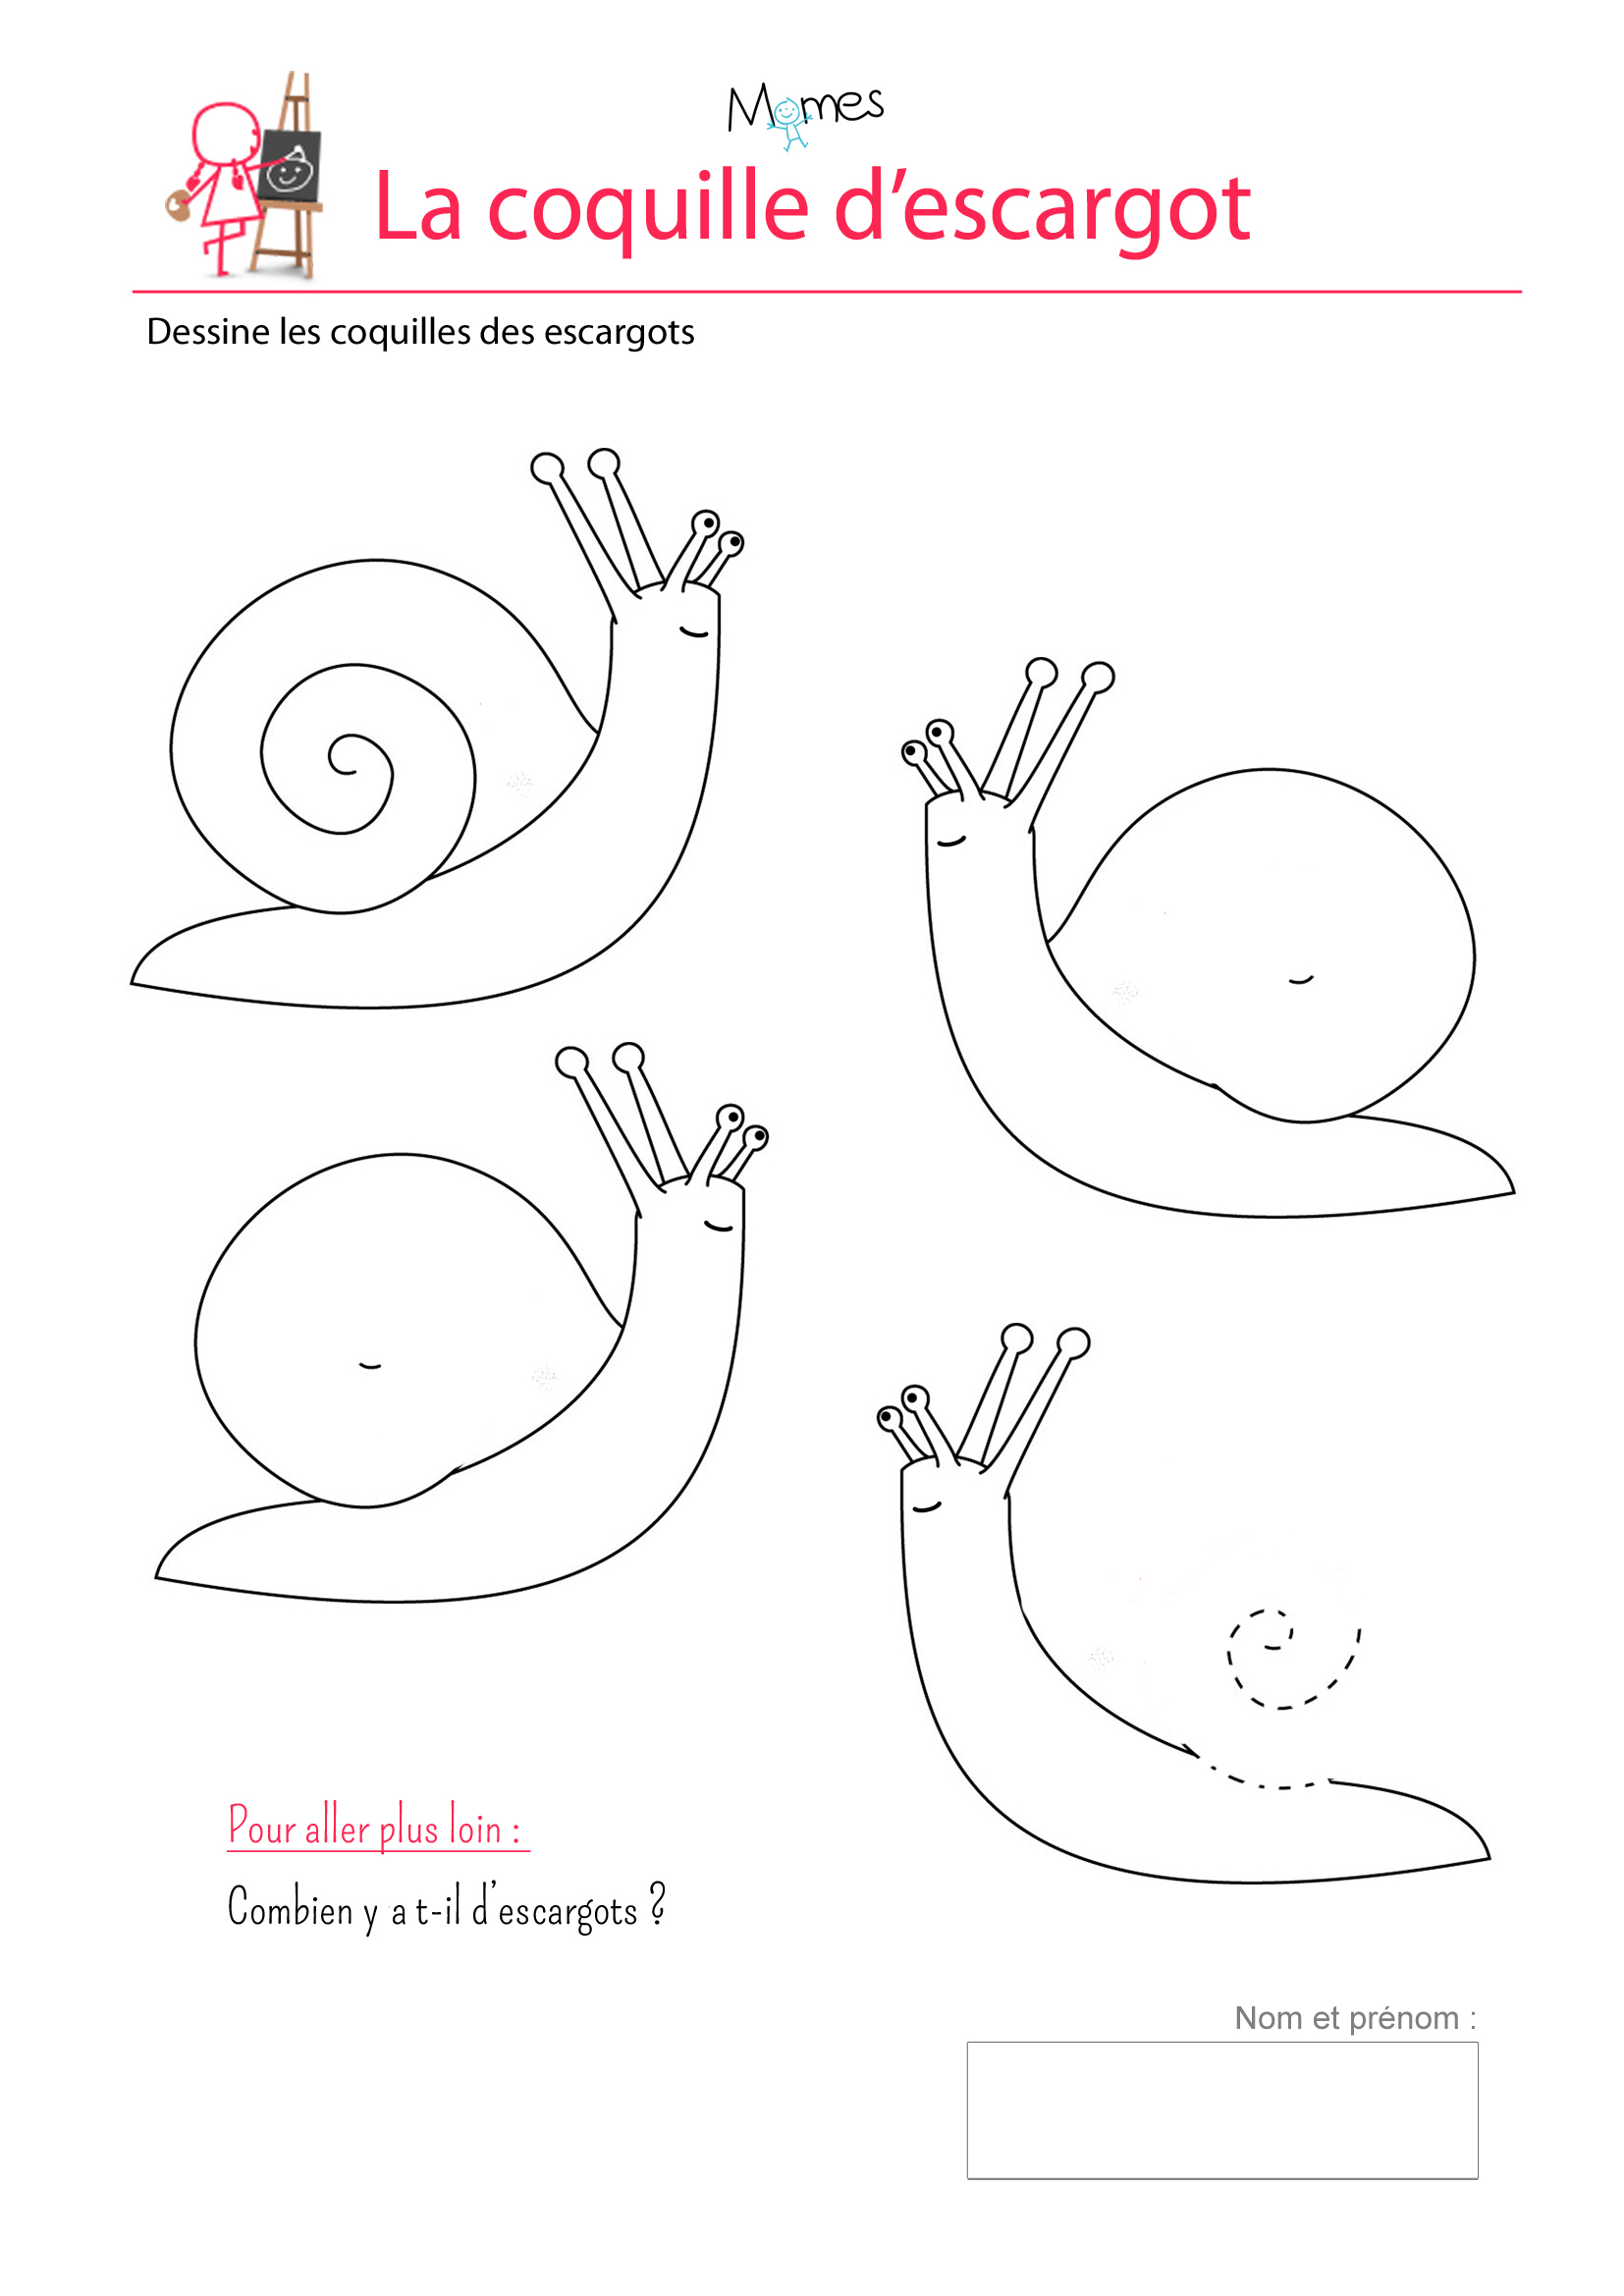 Les Coquilles D'escargots - Exercice Sur Les Spirales destiné Exercice Enfant 4 Ans